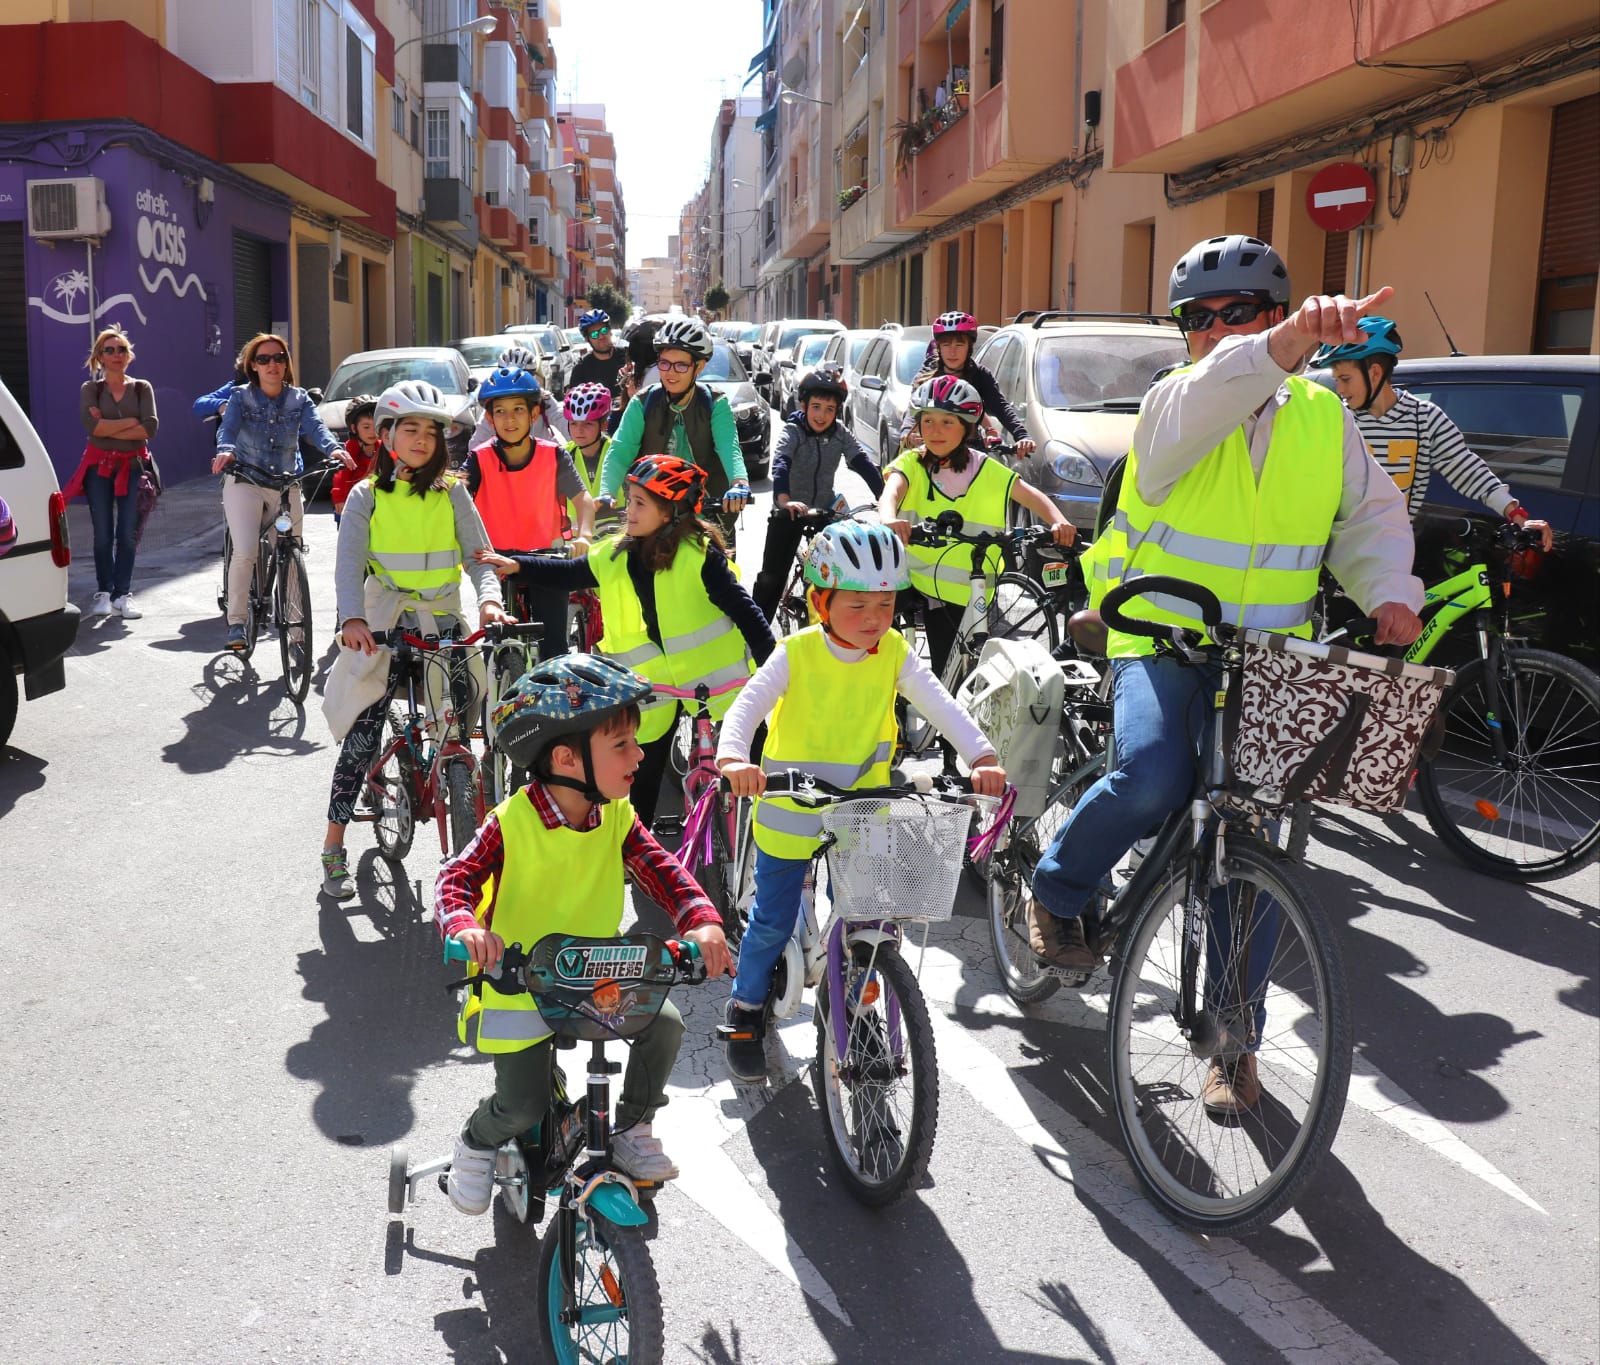 Bici-Bus, la iniciativa del Bonavista per a anar a l'escola de forma sostenible i segura El Periòdic d'Ontinyent - Noticies a Ontinyent